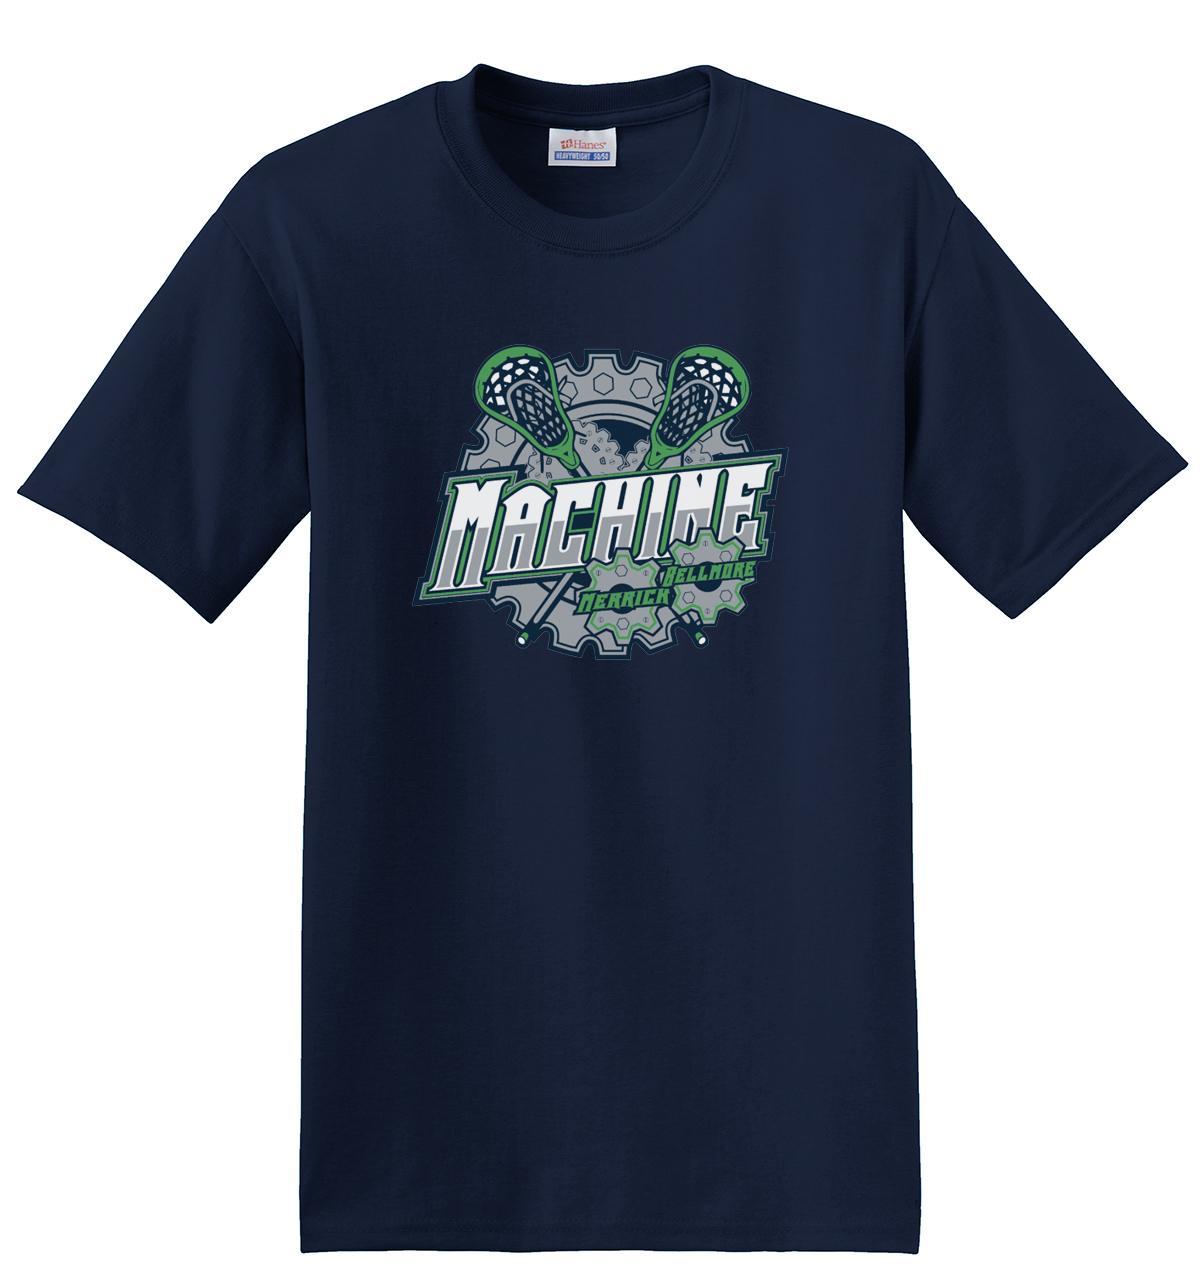 Merrick-Bellmore Machine T-Shirt (Navy)